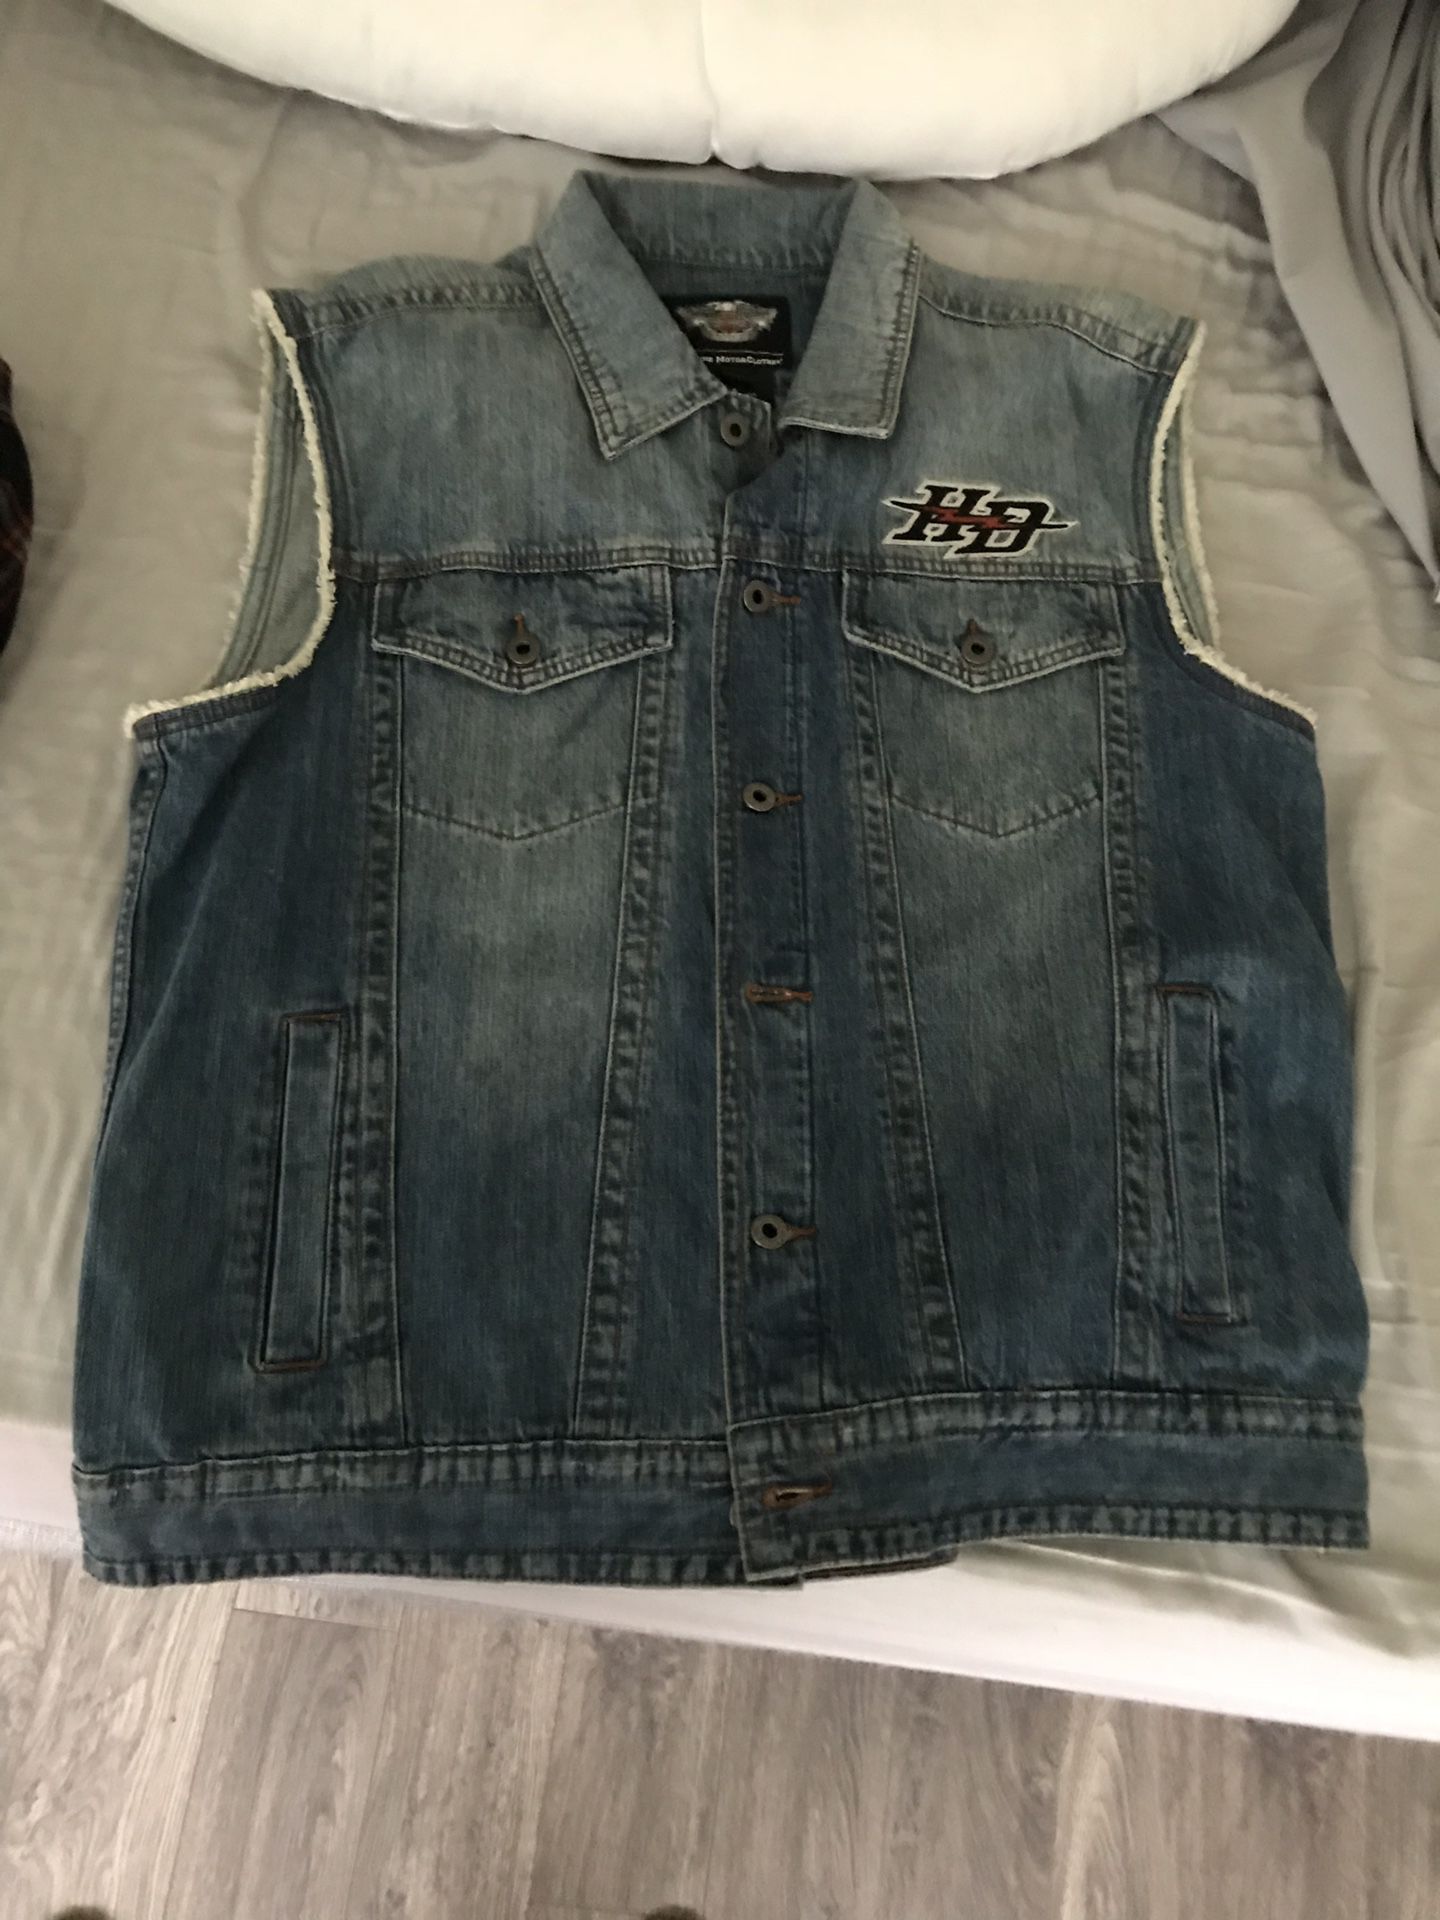 Harley davidson clothes vest